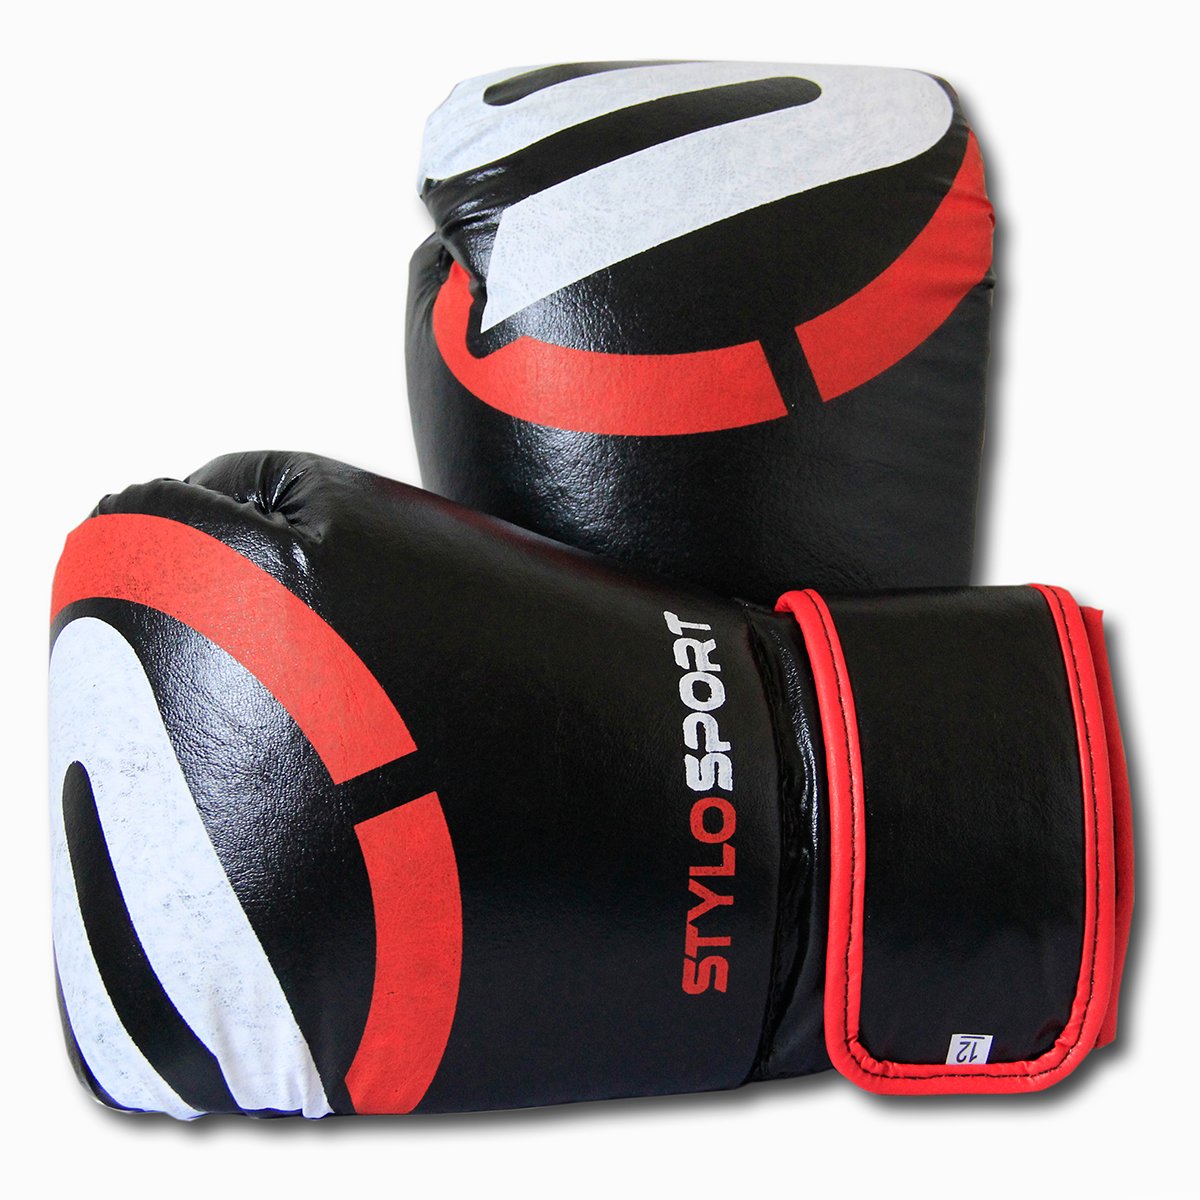 Luva Muay Thai Boxe Treino Profissional Stylo + Bandagem Elástica - 6